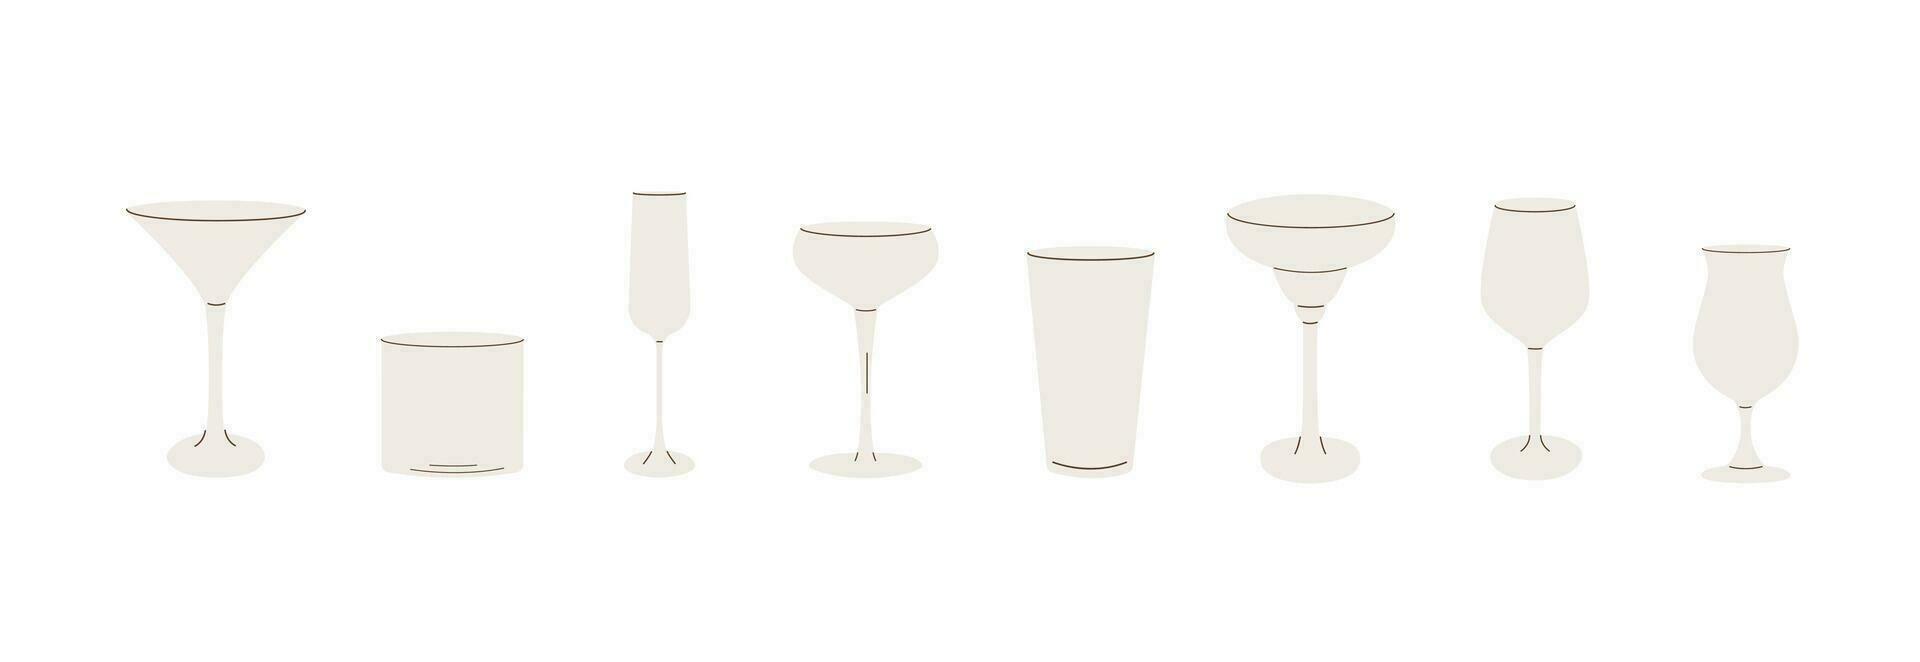 vector conjunto de cóctel lentes plano iconos de moda moderno sencillo estilo de diferente artículos de bar. vacío cristalería para bar. varios vaso para alcohólico bebidas, bebidas, jugos y batidos